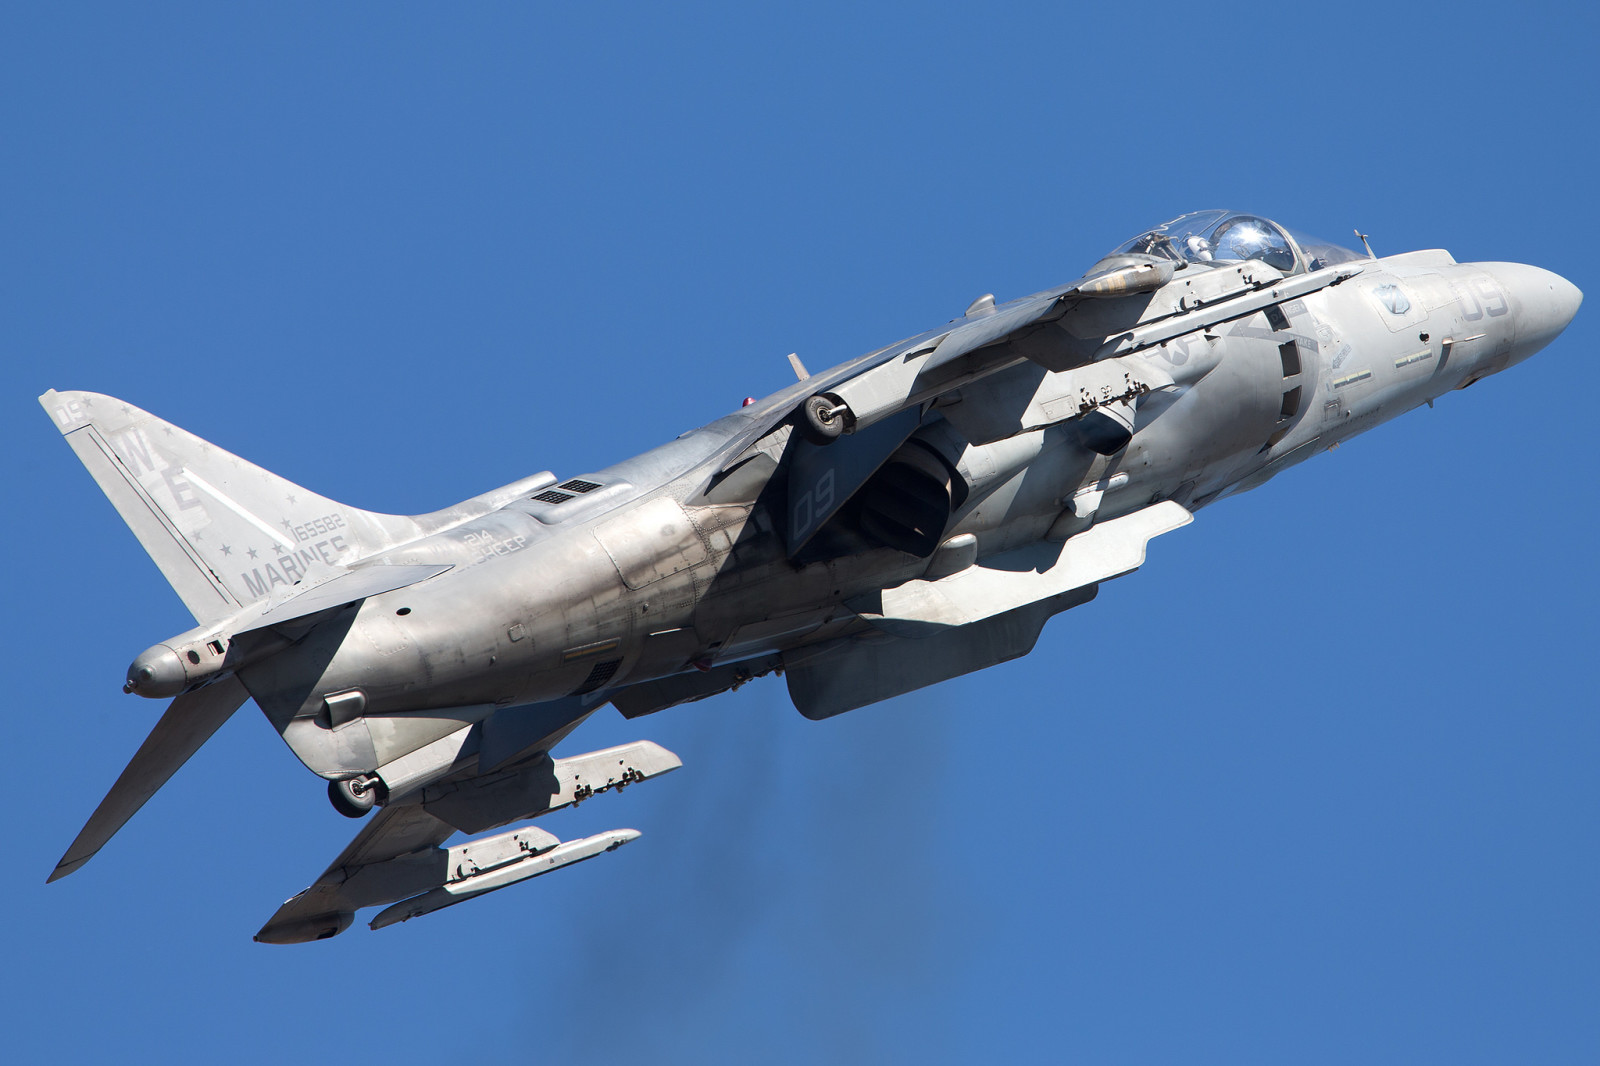 Menyerang, Harrier II, AV-8B, "Harrier" II